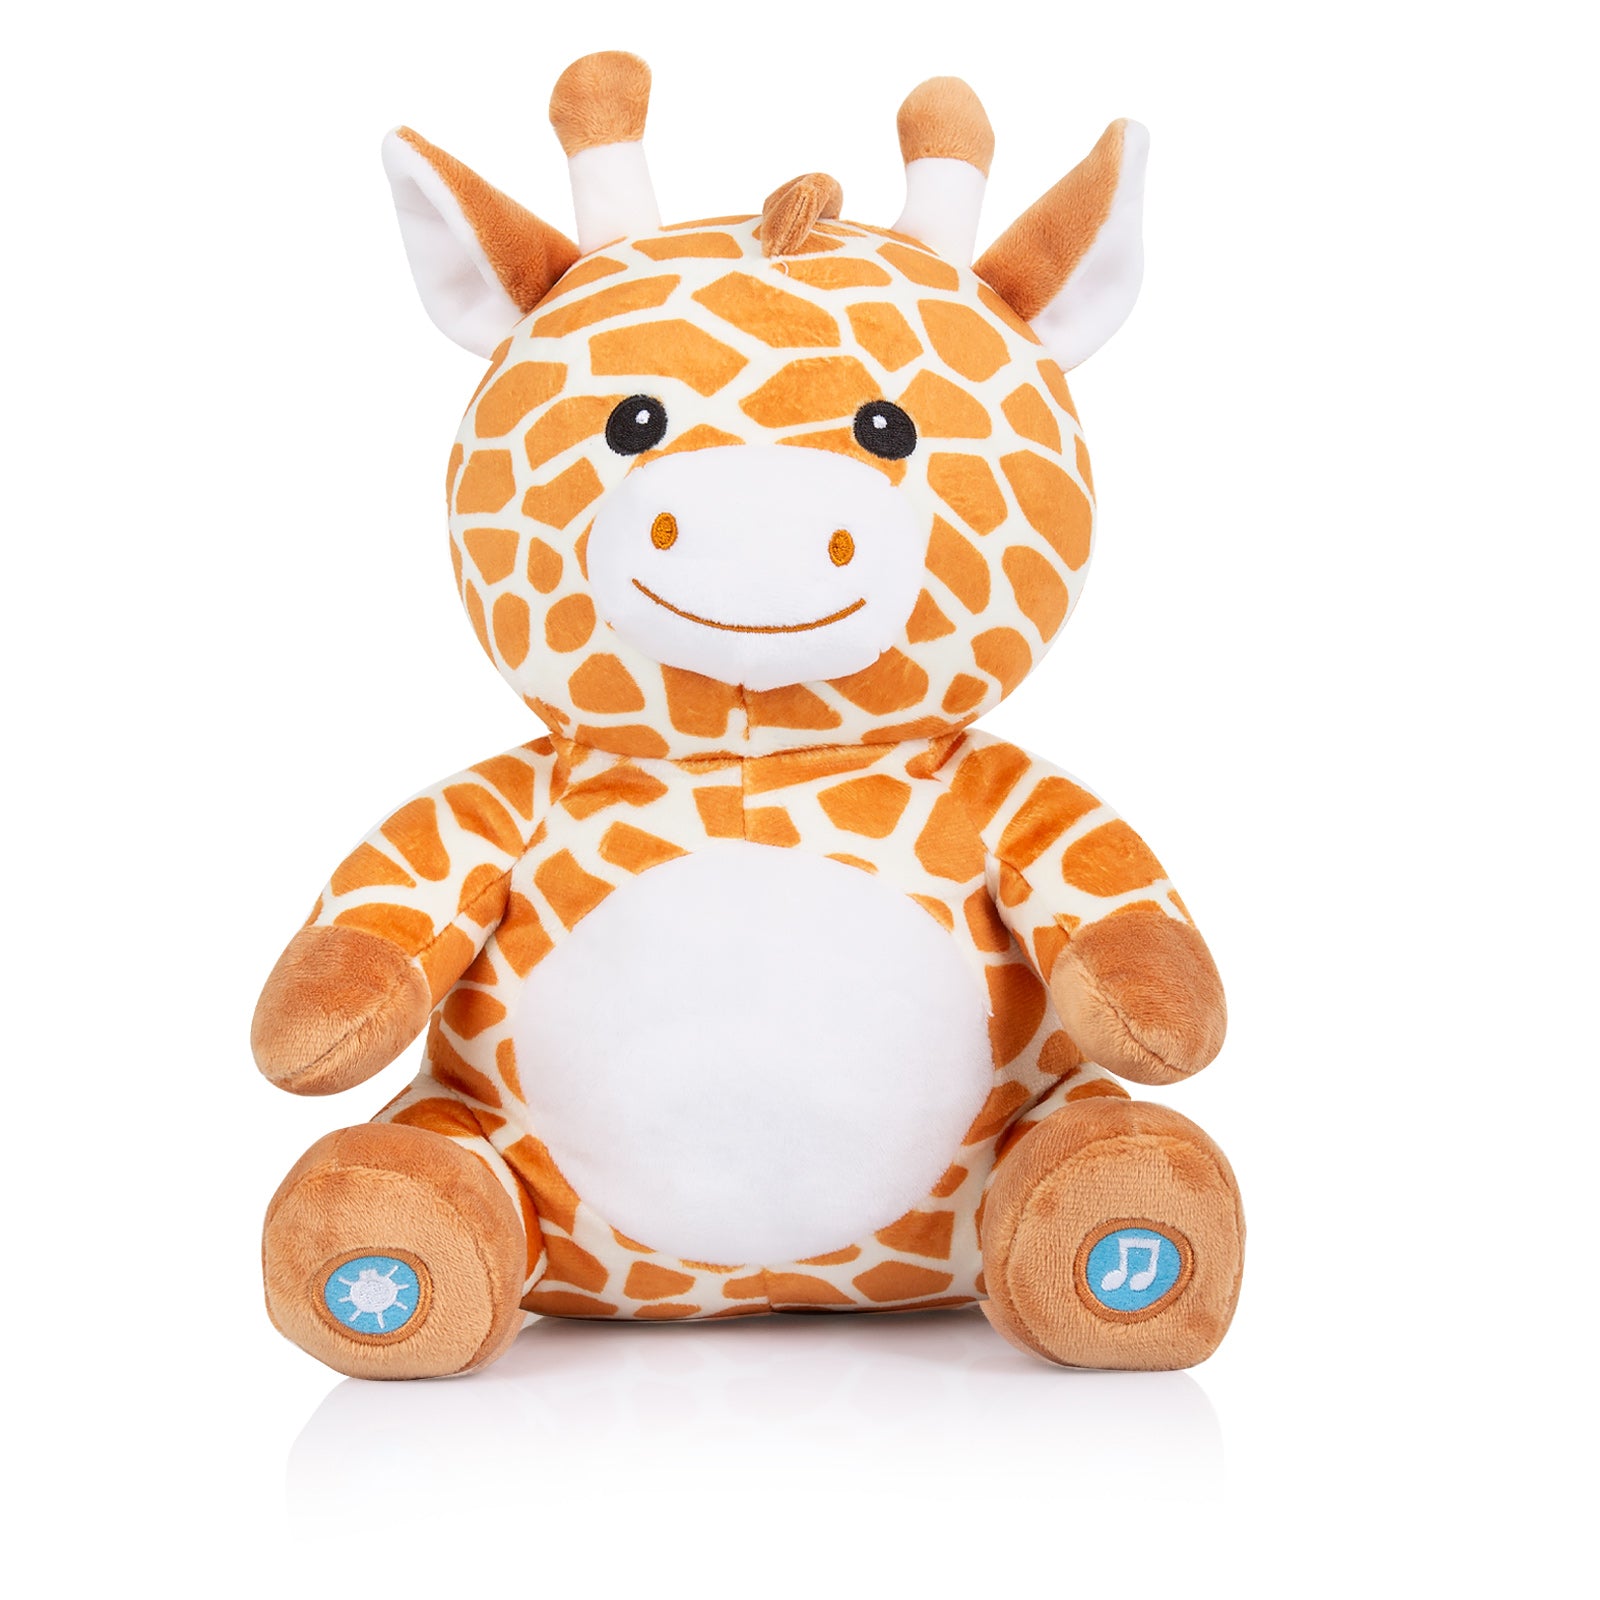 Chipolino plišana igračka s glazbom i svijetlom - Giraffe